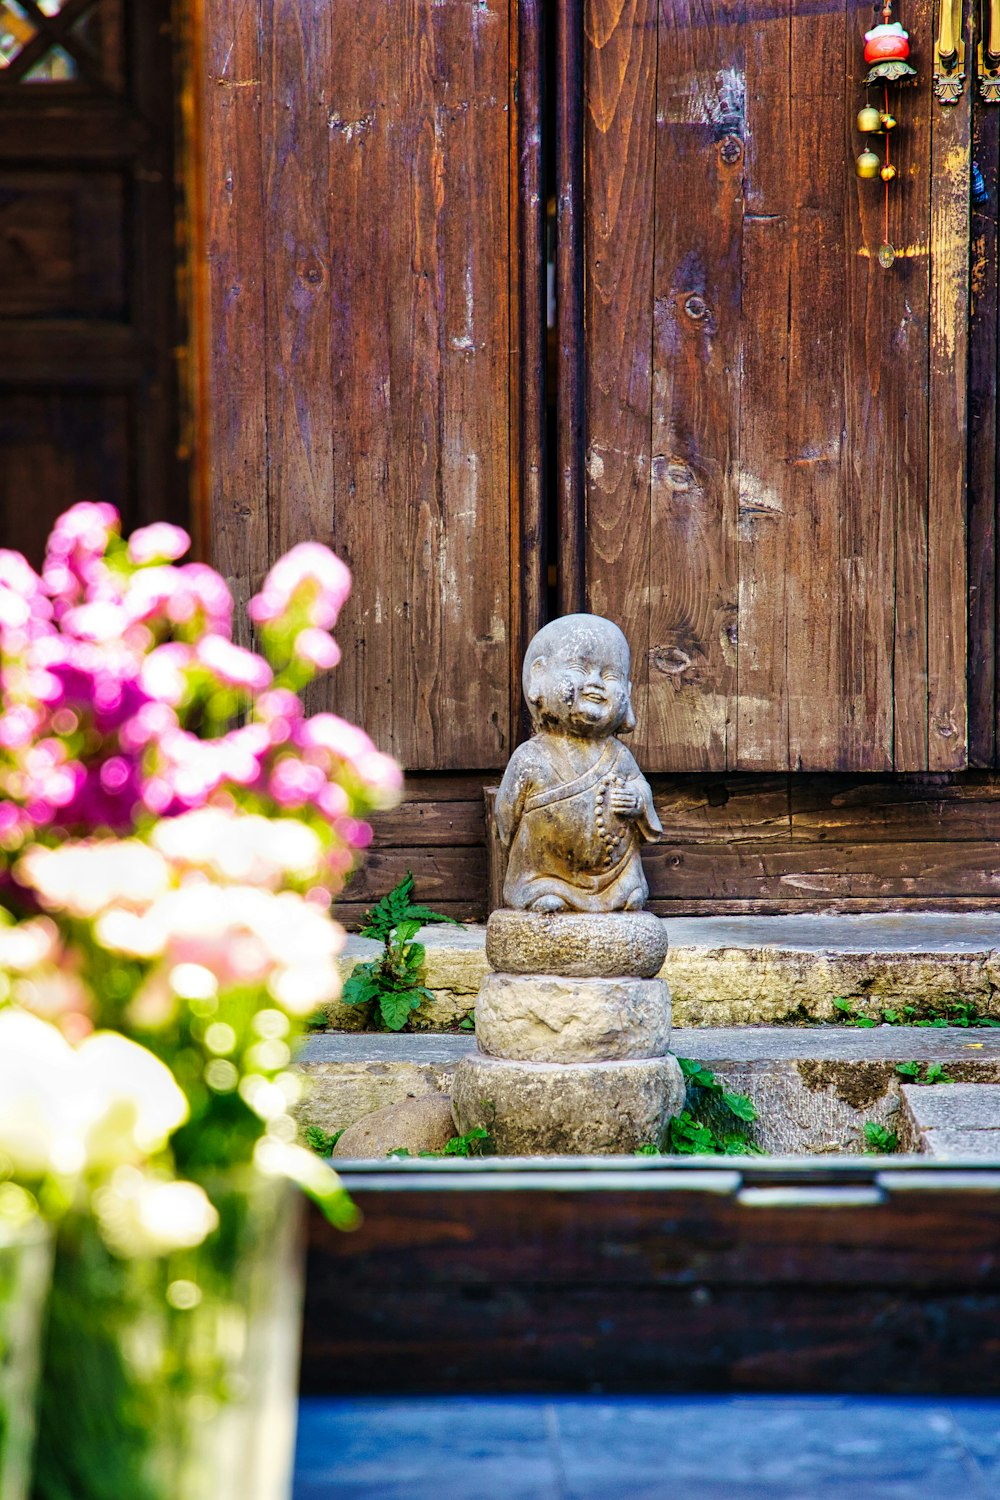 Uma pequena estátua de Buda sentada em frente a uma porta de madeira